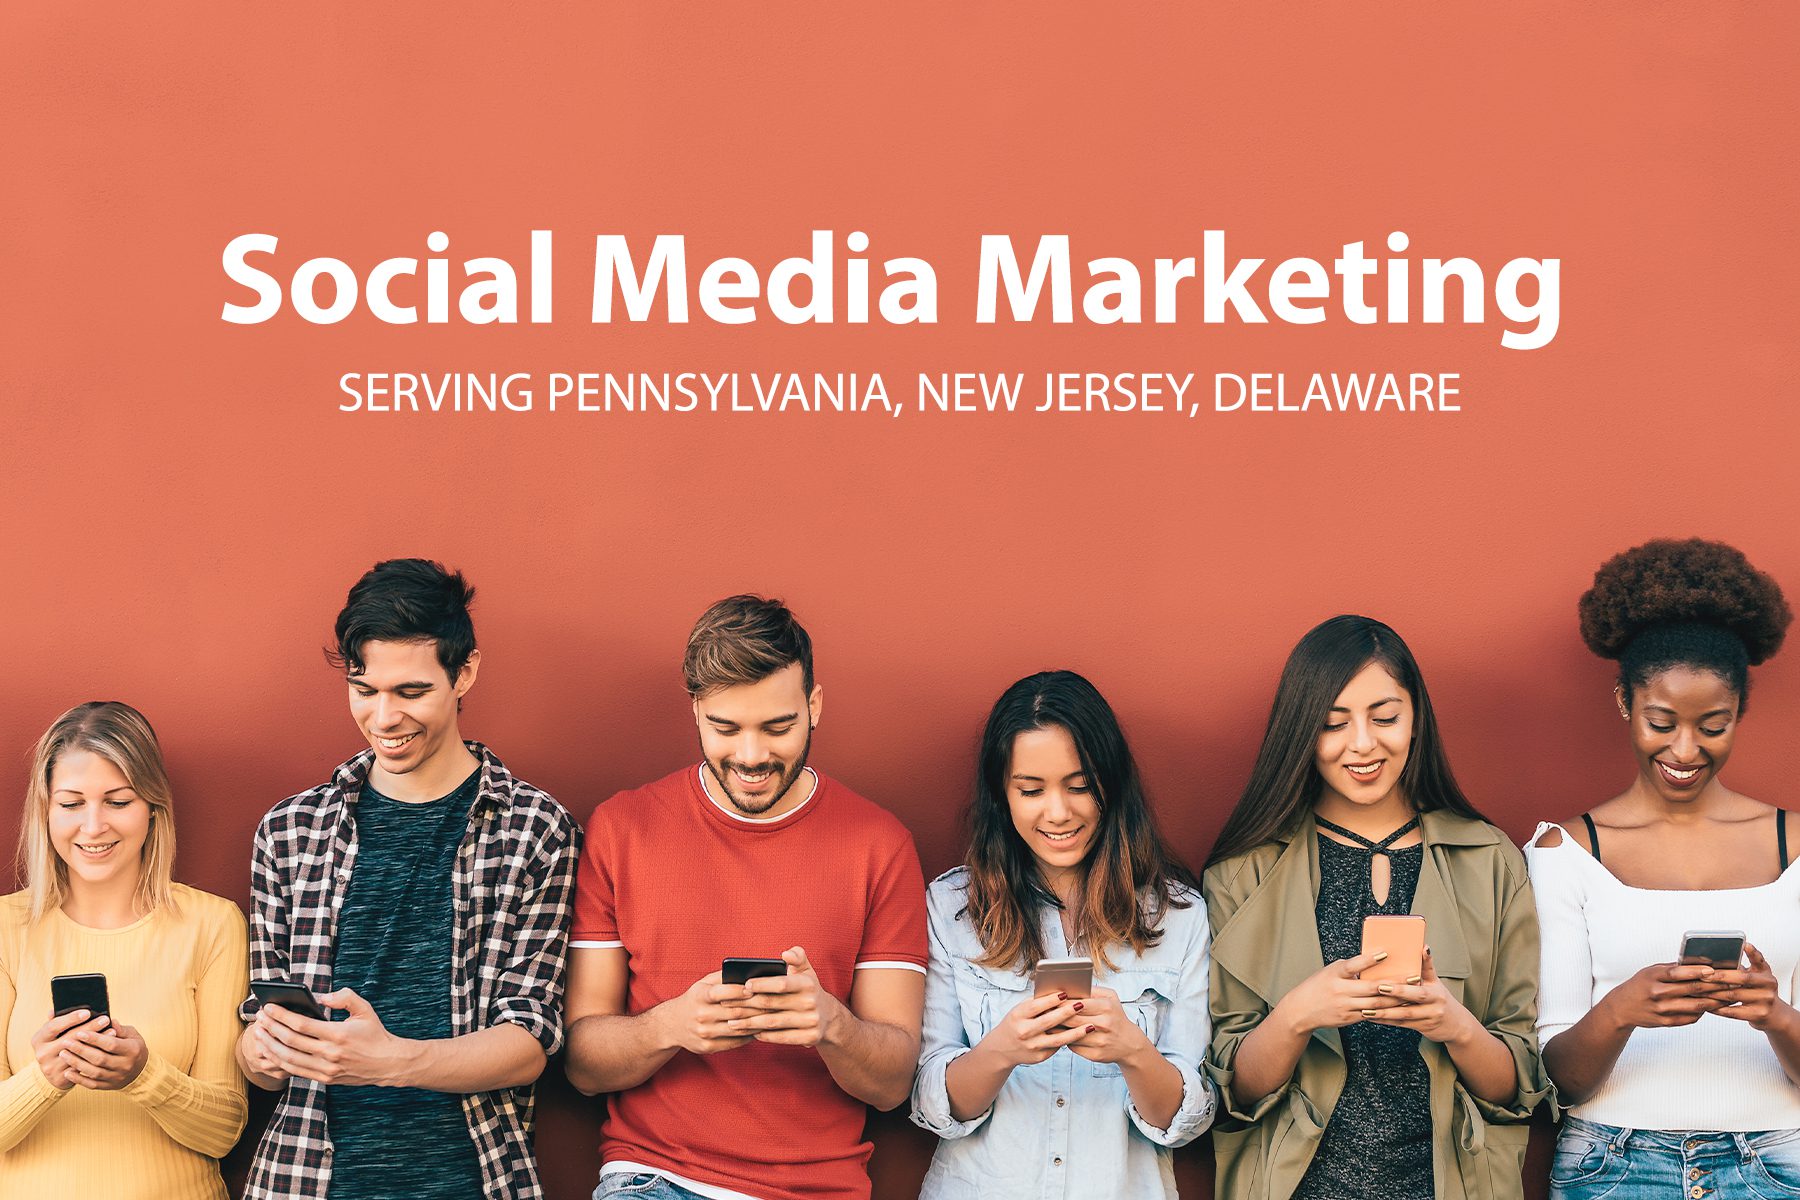 social media marketing agency, serving pennsylvania, new jersey, delaware